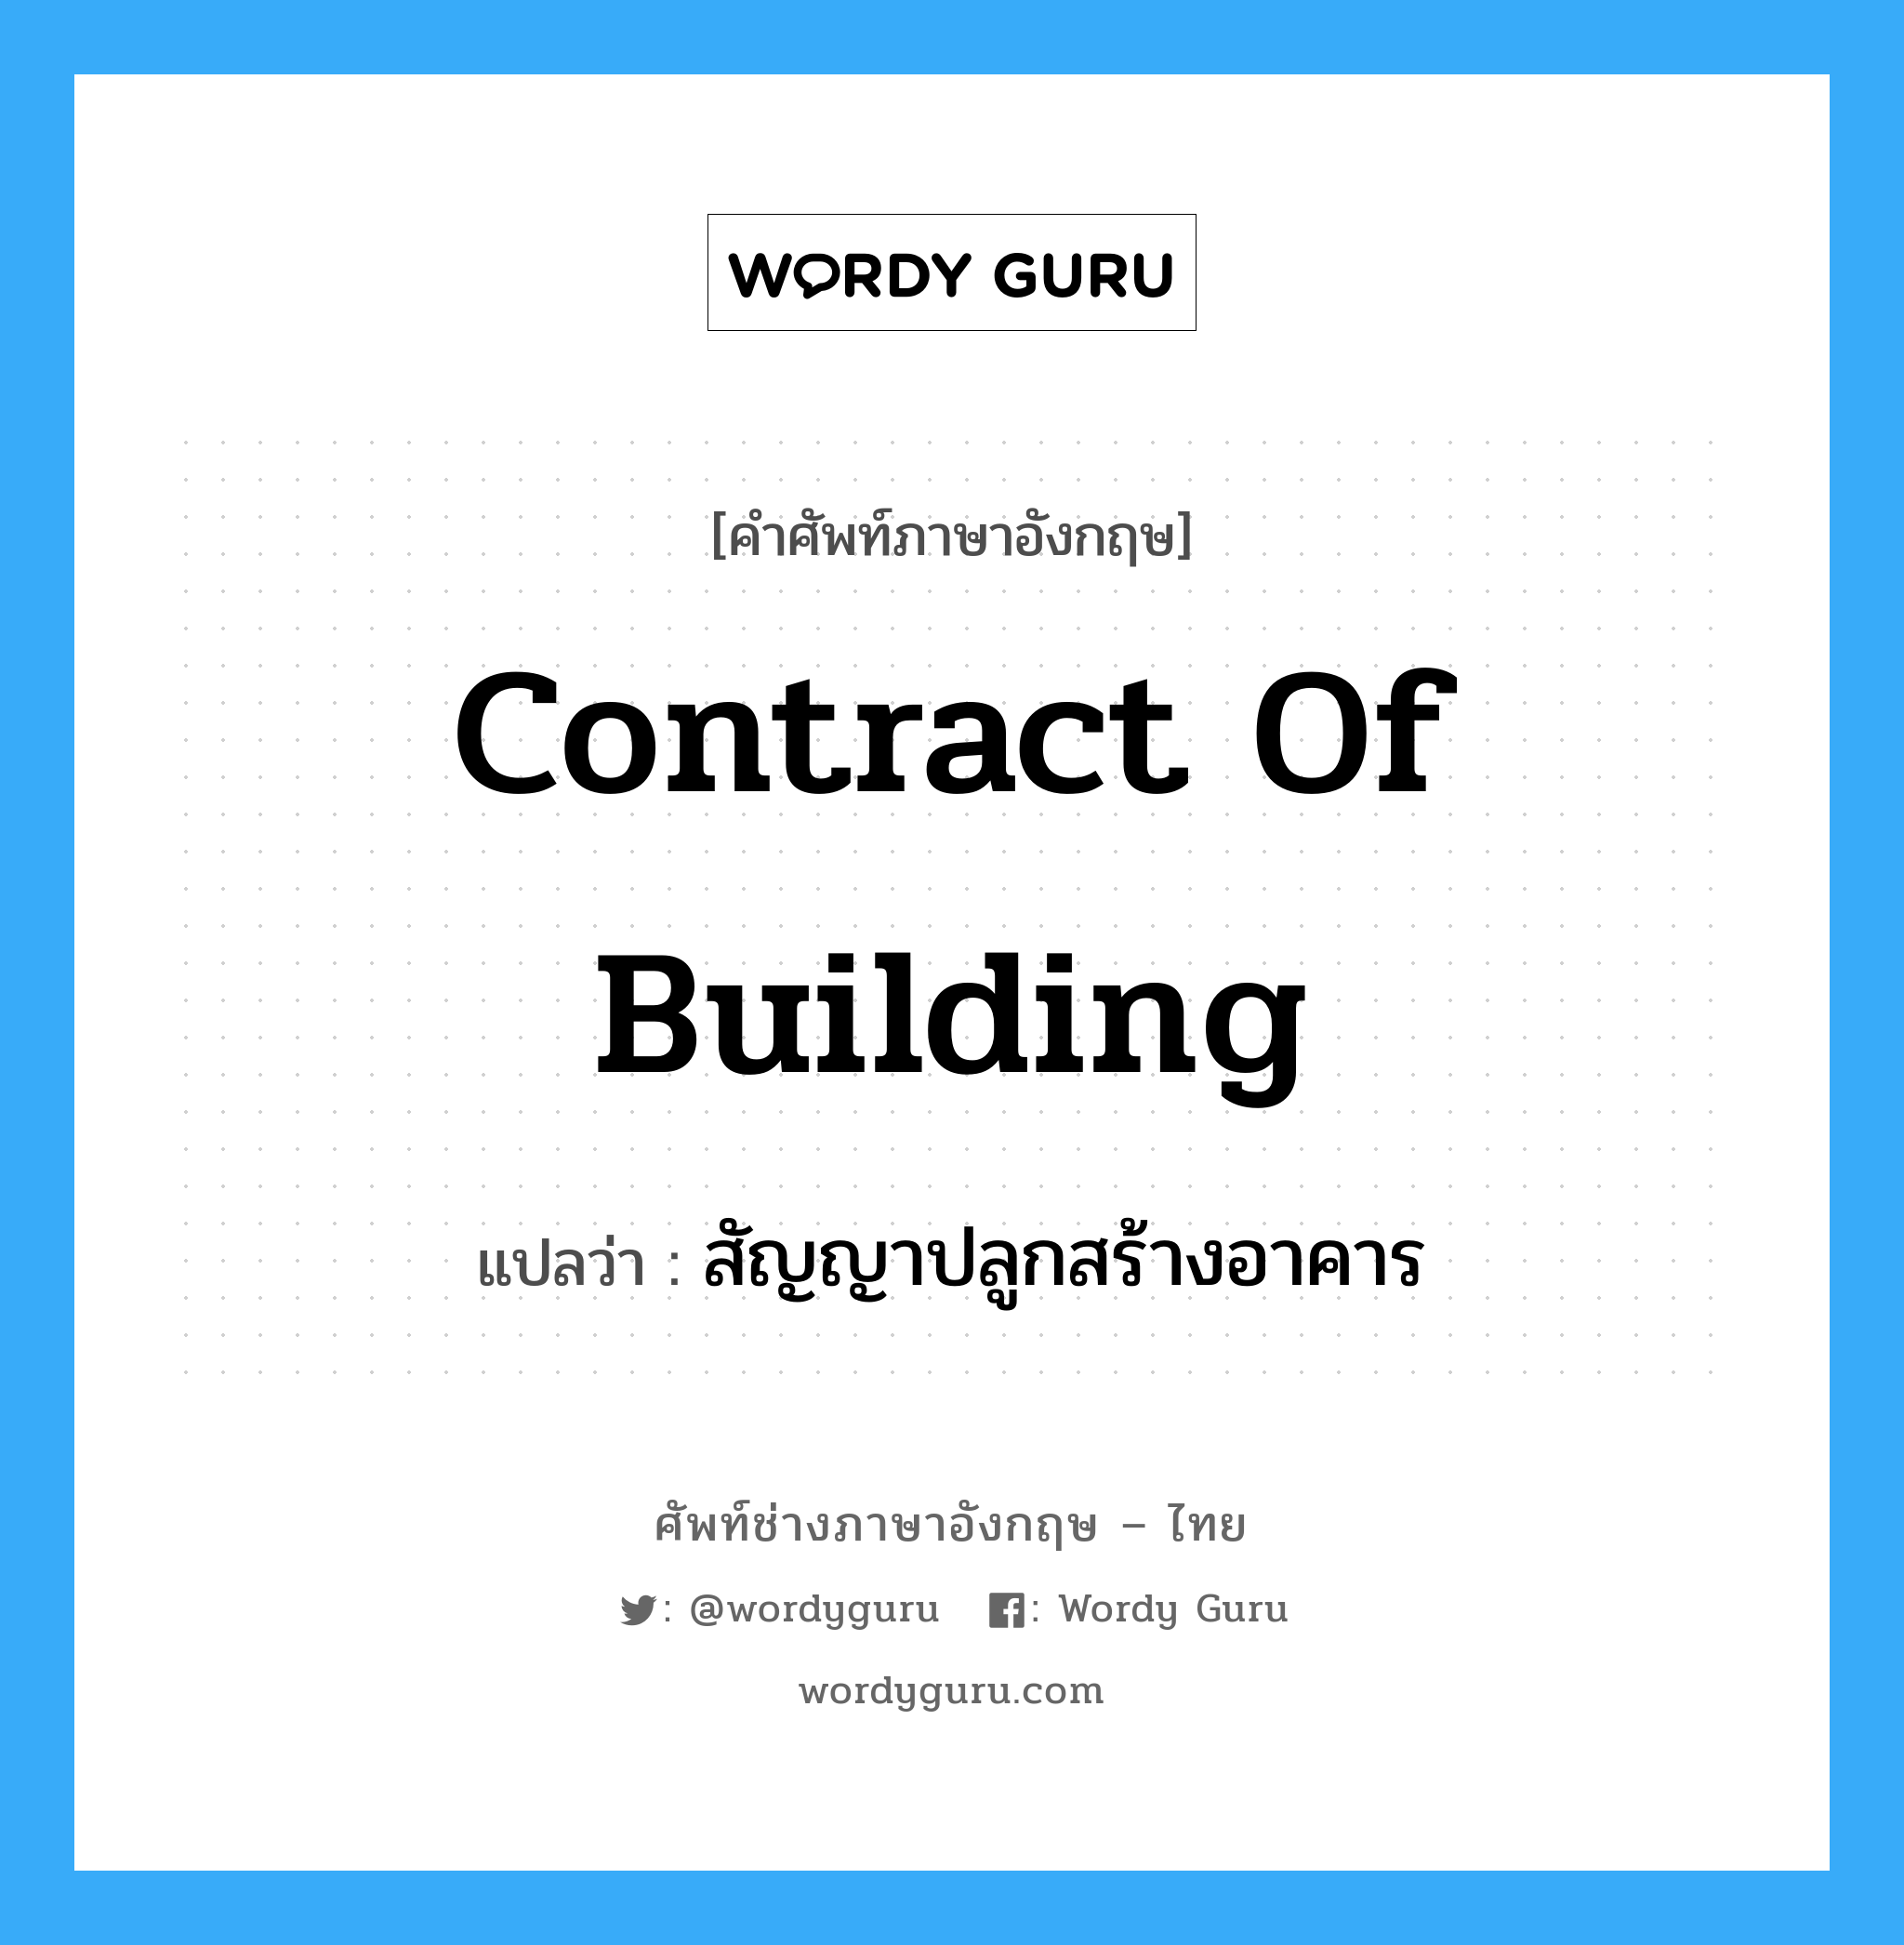 สัญญาปลูกสร้างอาคาร ภาษาอังกฤษ?, คำศัพท์ช่างภาษาอังกฤษ - ไทย สัญญาปลูกสร้างอาคาร คำศัพท์ภาษาอังกฤษ สัญญาปลูกสร้างอาคาร แปลว่า contract of building